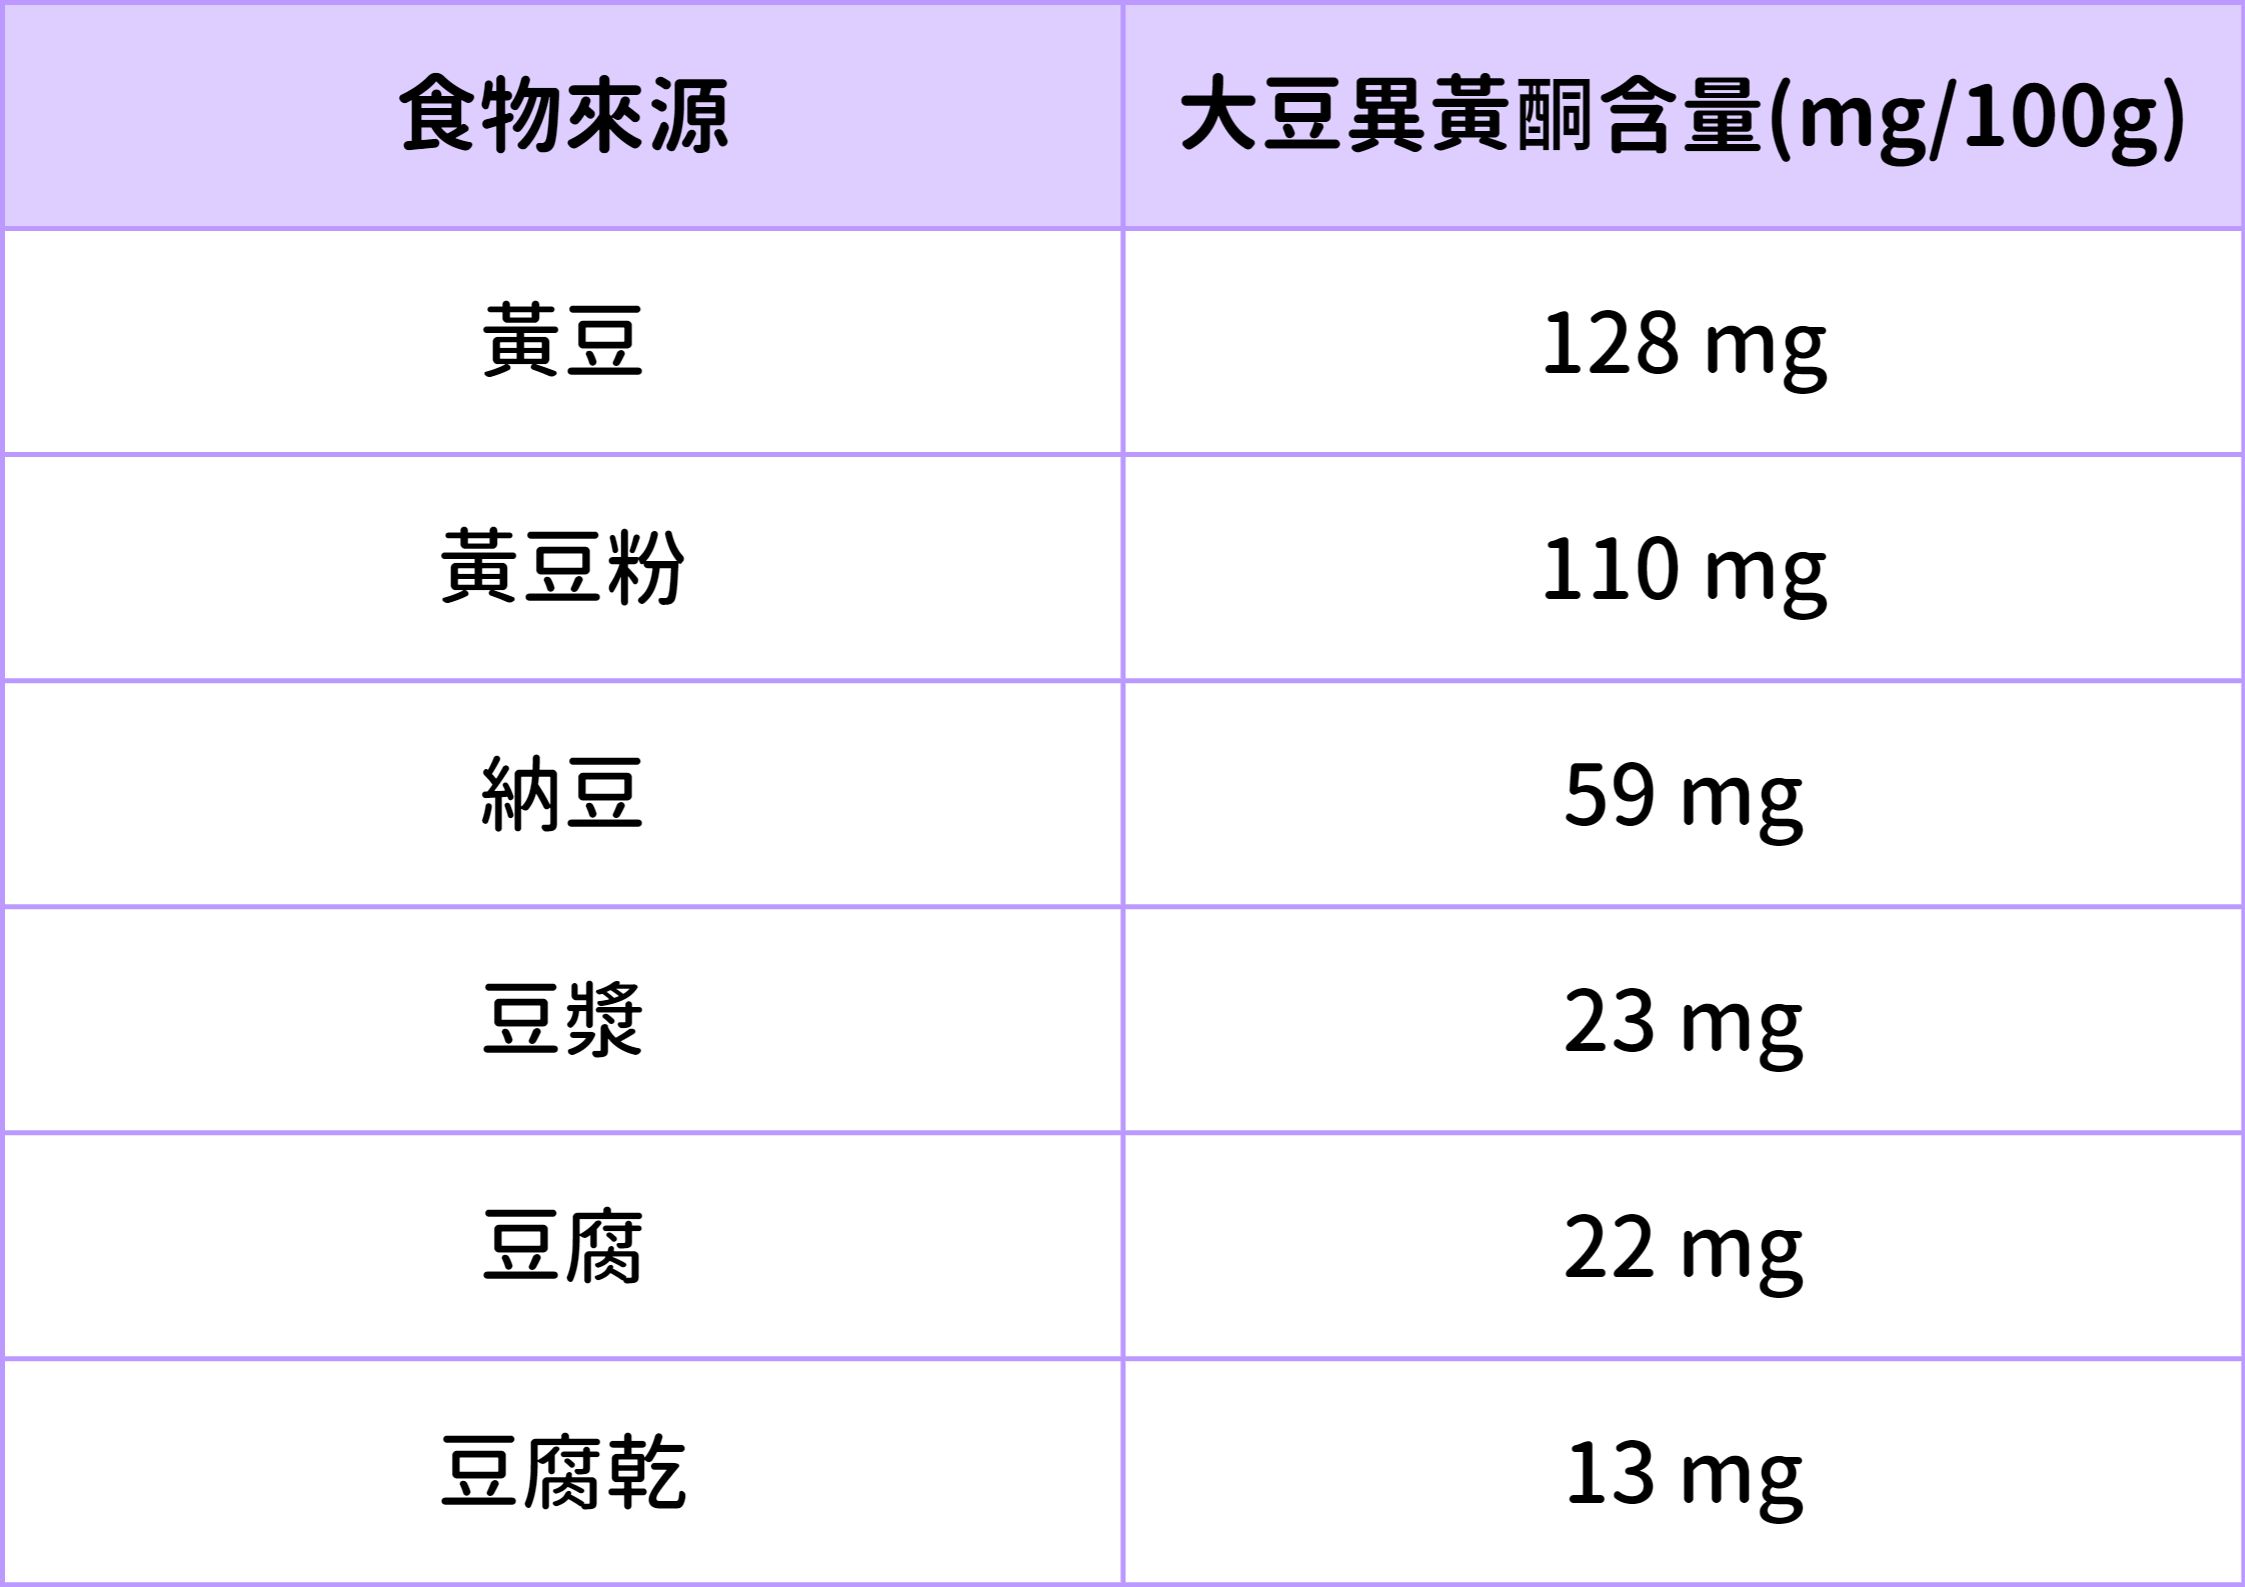 大豆 異 黃酮 食物 來源 含量